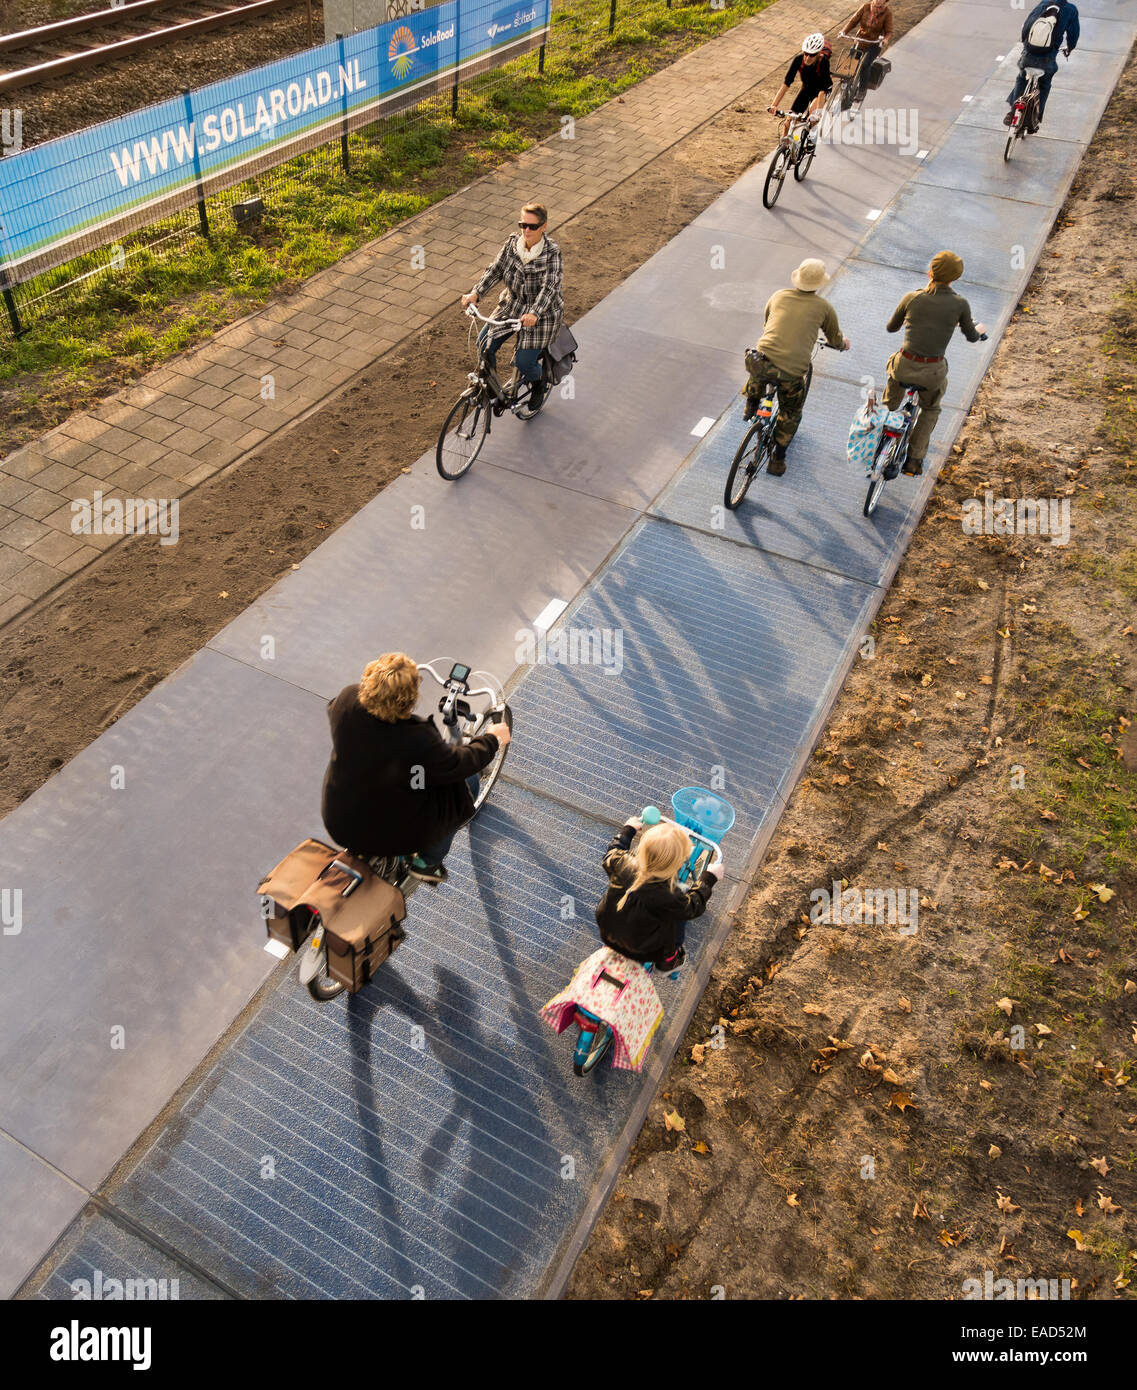 Krommenie, Paesi Bassi. 12 Novembre, 2014. File foto: 1 novembre 2014. Il primo al mondo pista ciclabile realizzata dalle celle solari con i ciclisti su occupato percorso in bicicletta. Inizialmente solo 70 metri (230 piedi) lungo. Installato Ottobre 2014 in Krommenie, 25 km (15 miglia) a nord di Amsterdam. Realizzato da lastre in calcestruzzo di 2,5 da 3,5 metri ( 6.5x10ft) con un traslucido lo strato superiore del vetro temprato, che è di circa 1 cm di spessore. Al di sotto del vetro sono in silicio cristallino celle solari. Il tratto iniziale è in grado di produrre una quantità di energia sufficiente ad alimentare tre case. Credito: Wiskerke/Alamy Live News Foto Stock